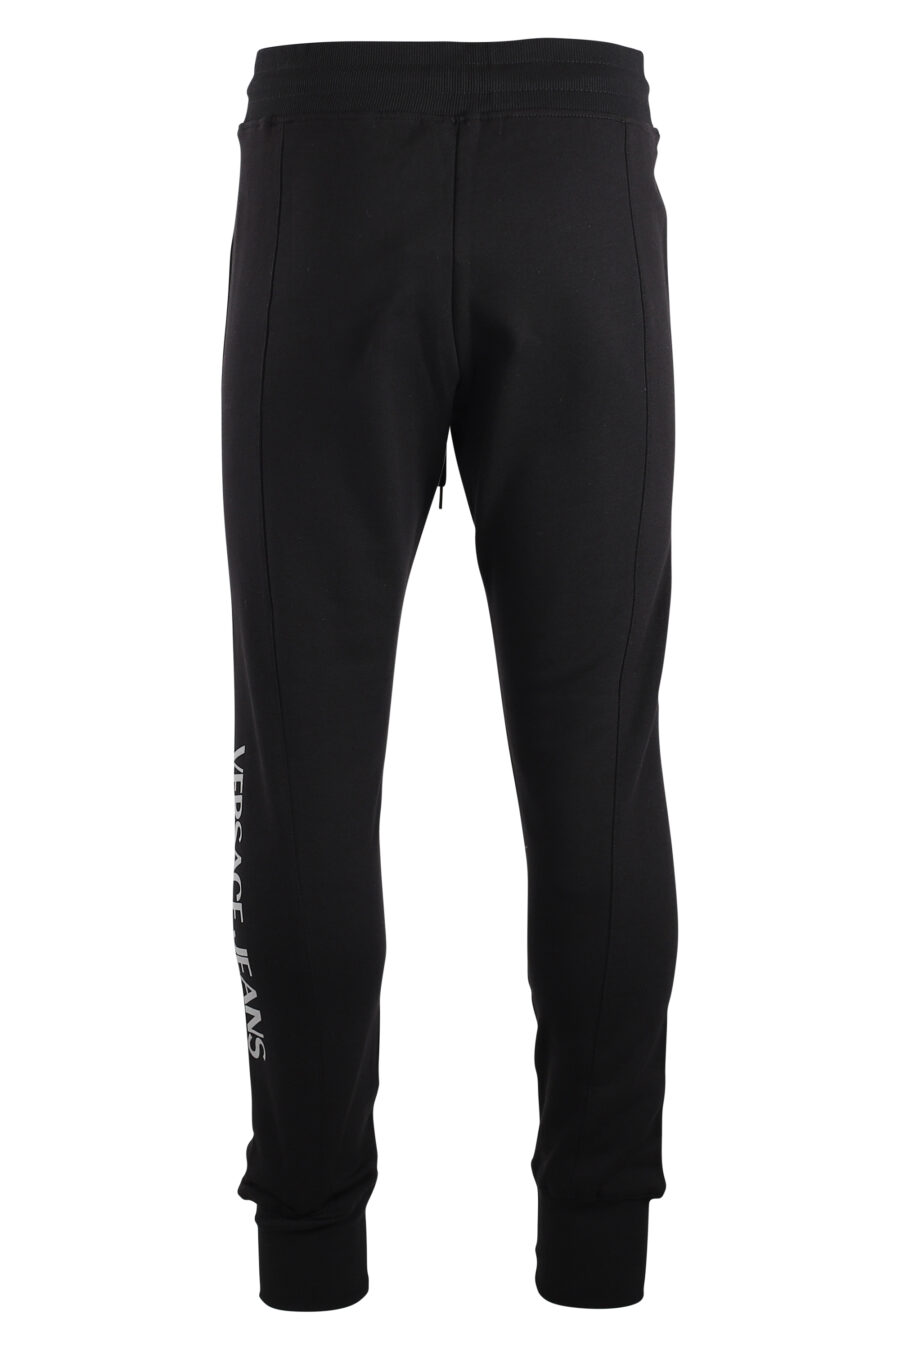 Pantalón de chándal negro con logo vertical plateado - IMG 7503